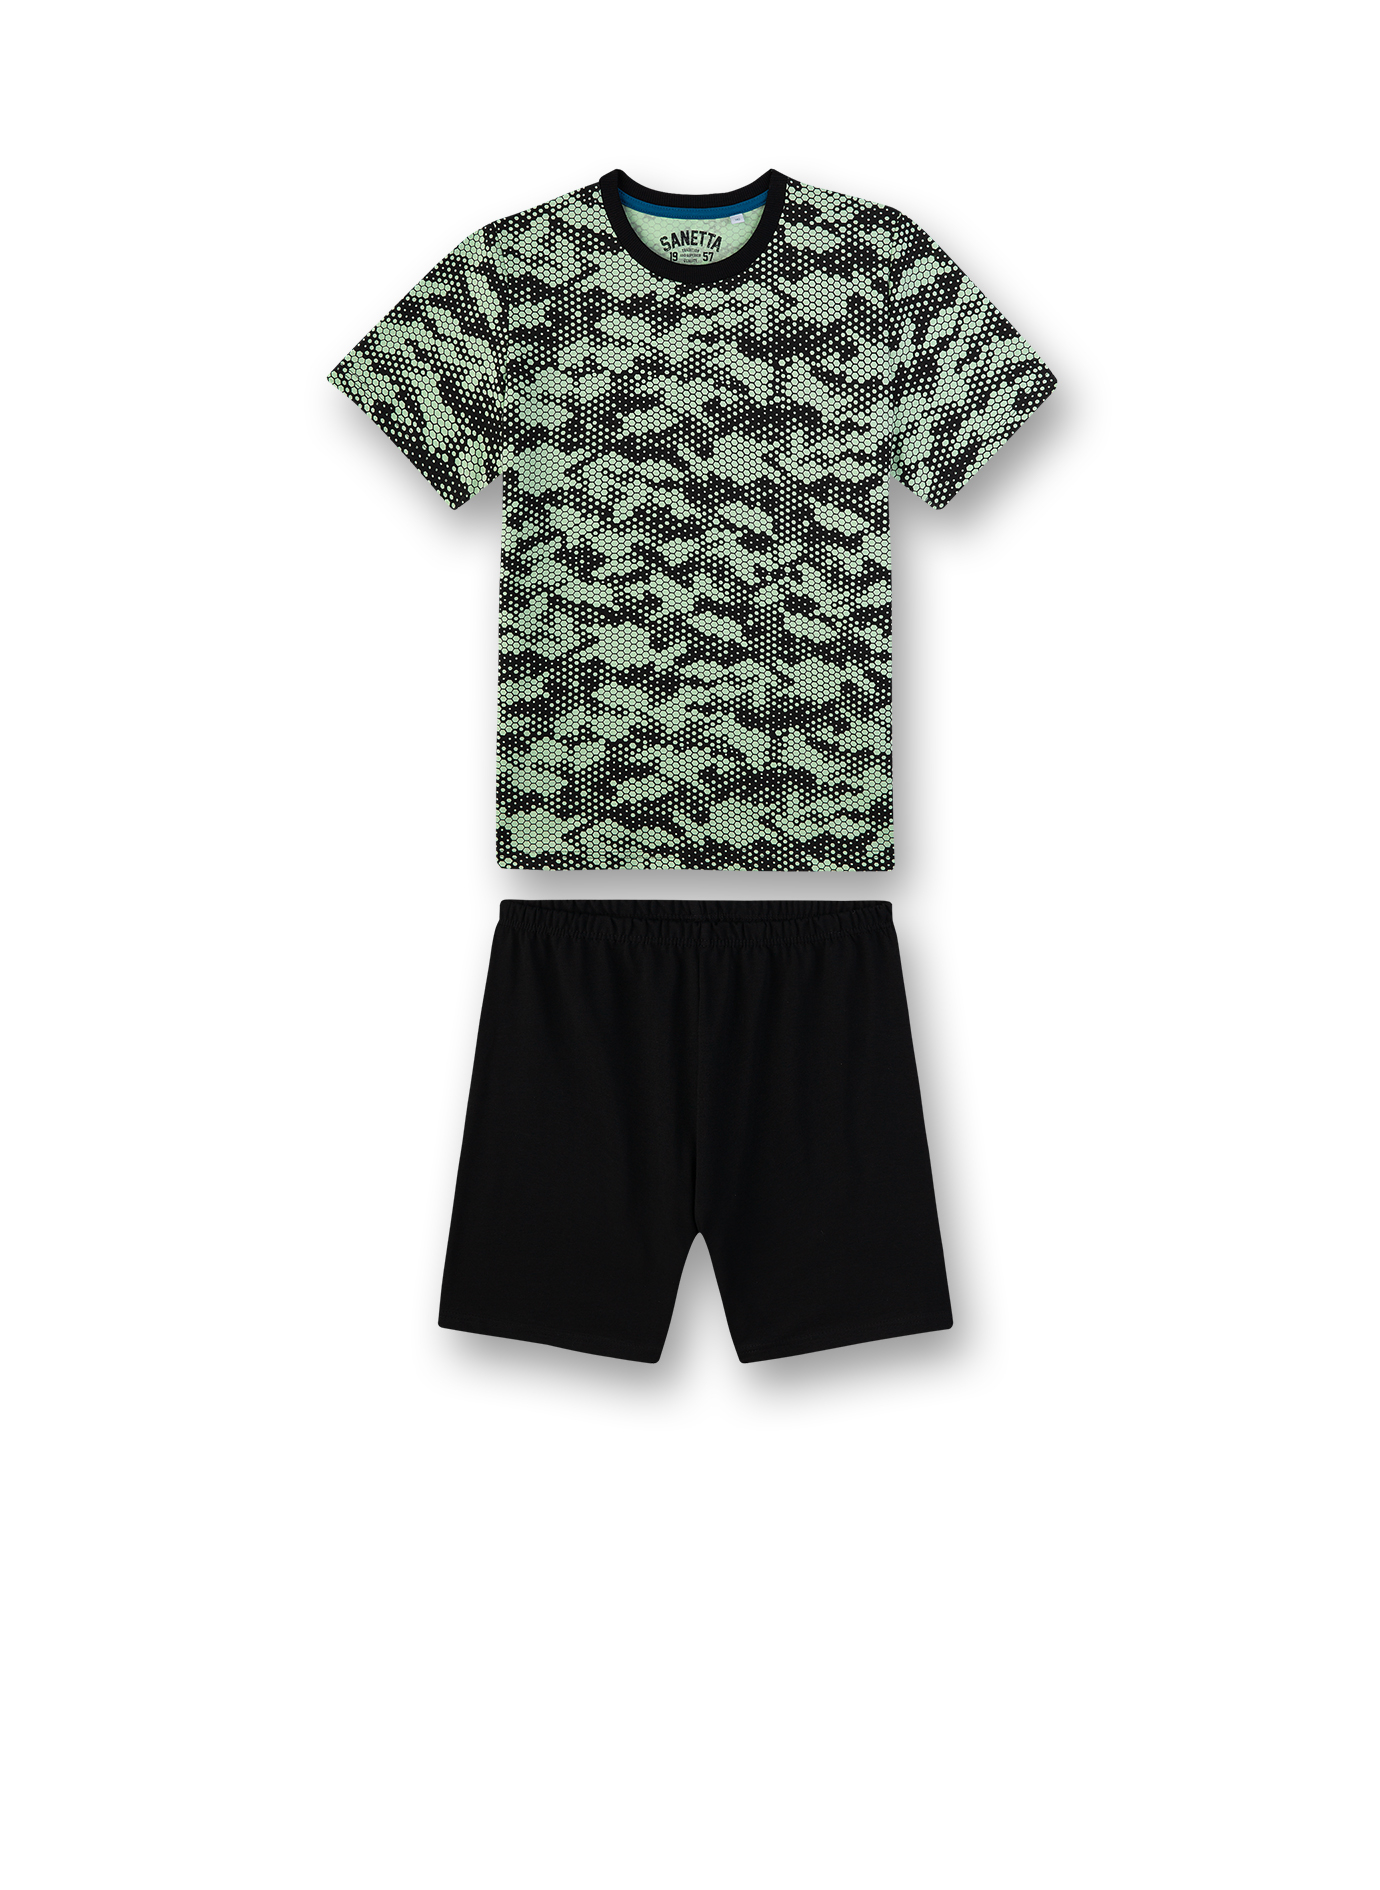 Jungen-Schlafanzug Camouflage The Game